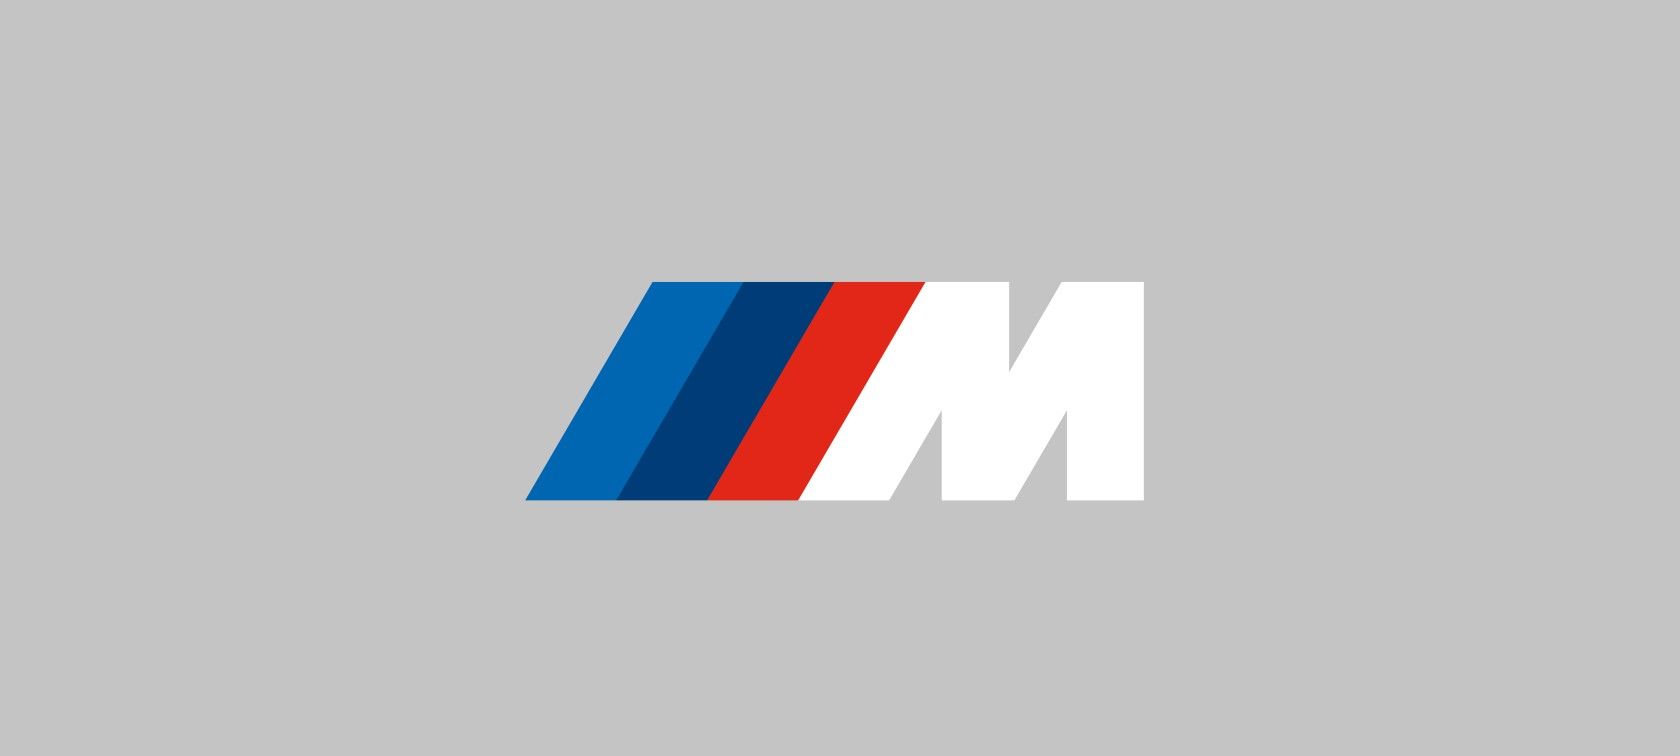 Qué representa el nuevo logo que lucirán los BMW M en 2022